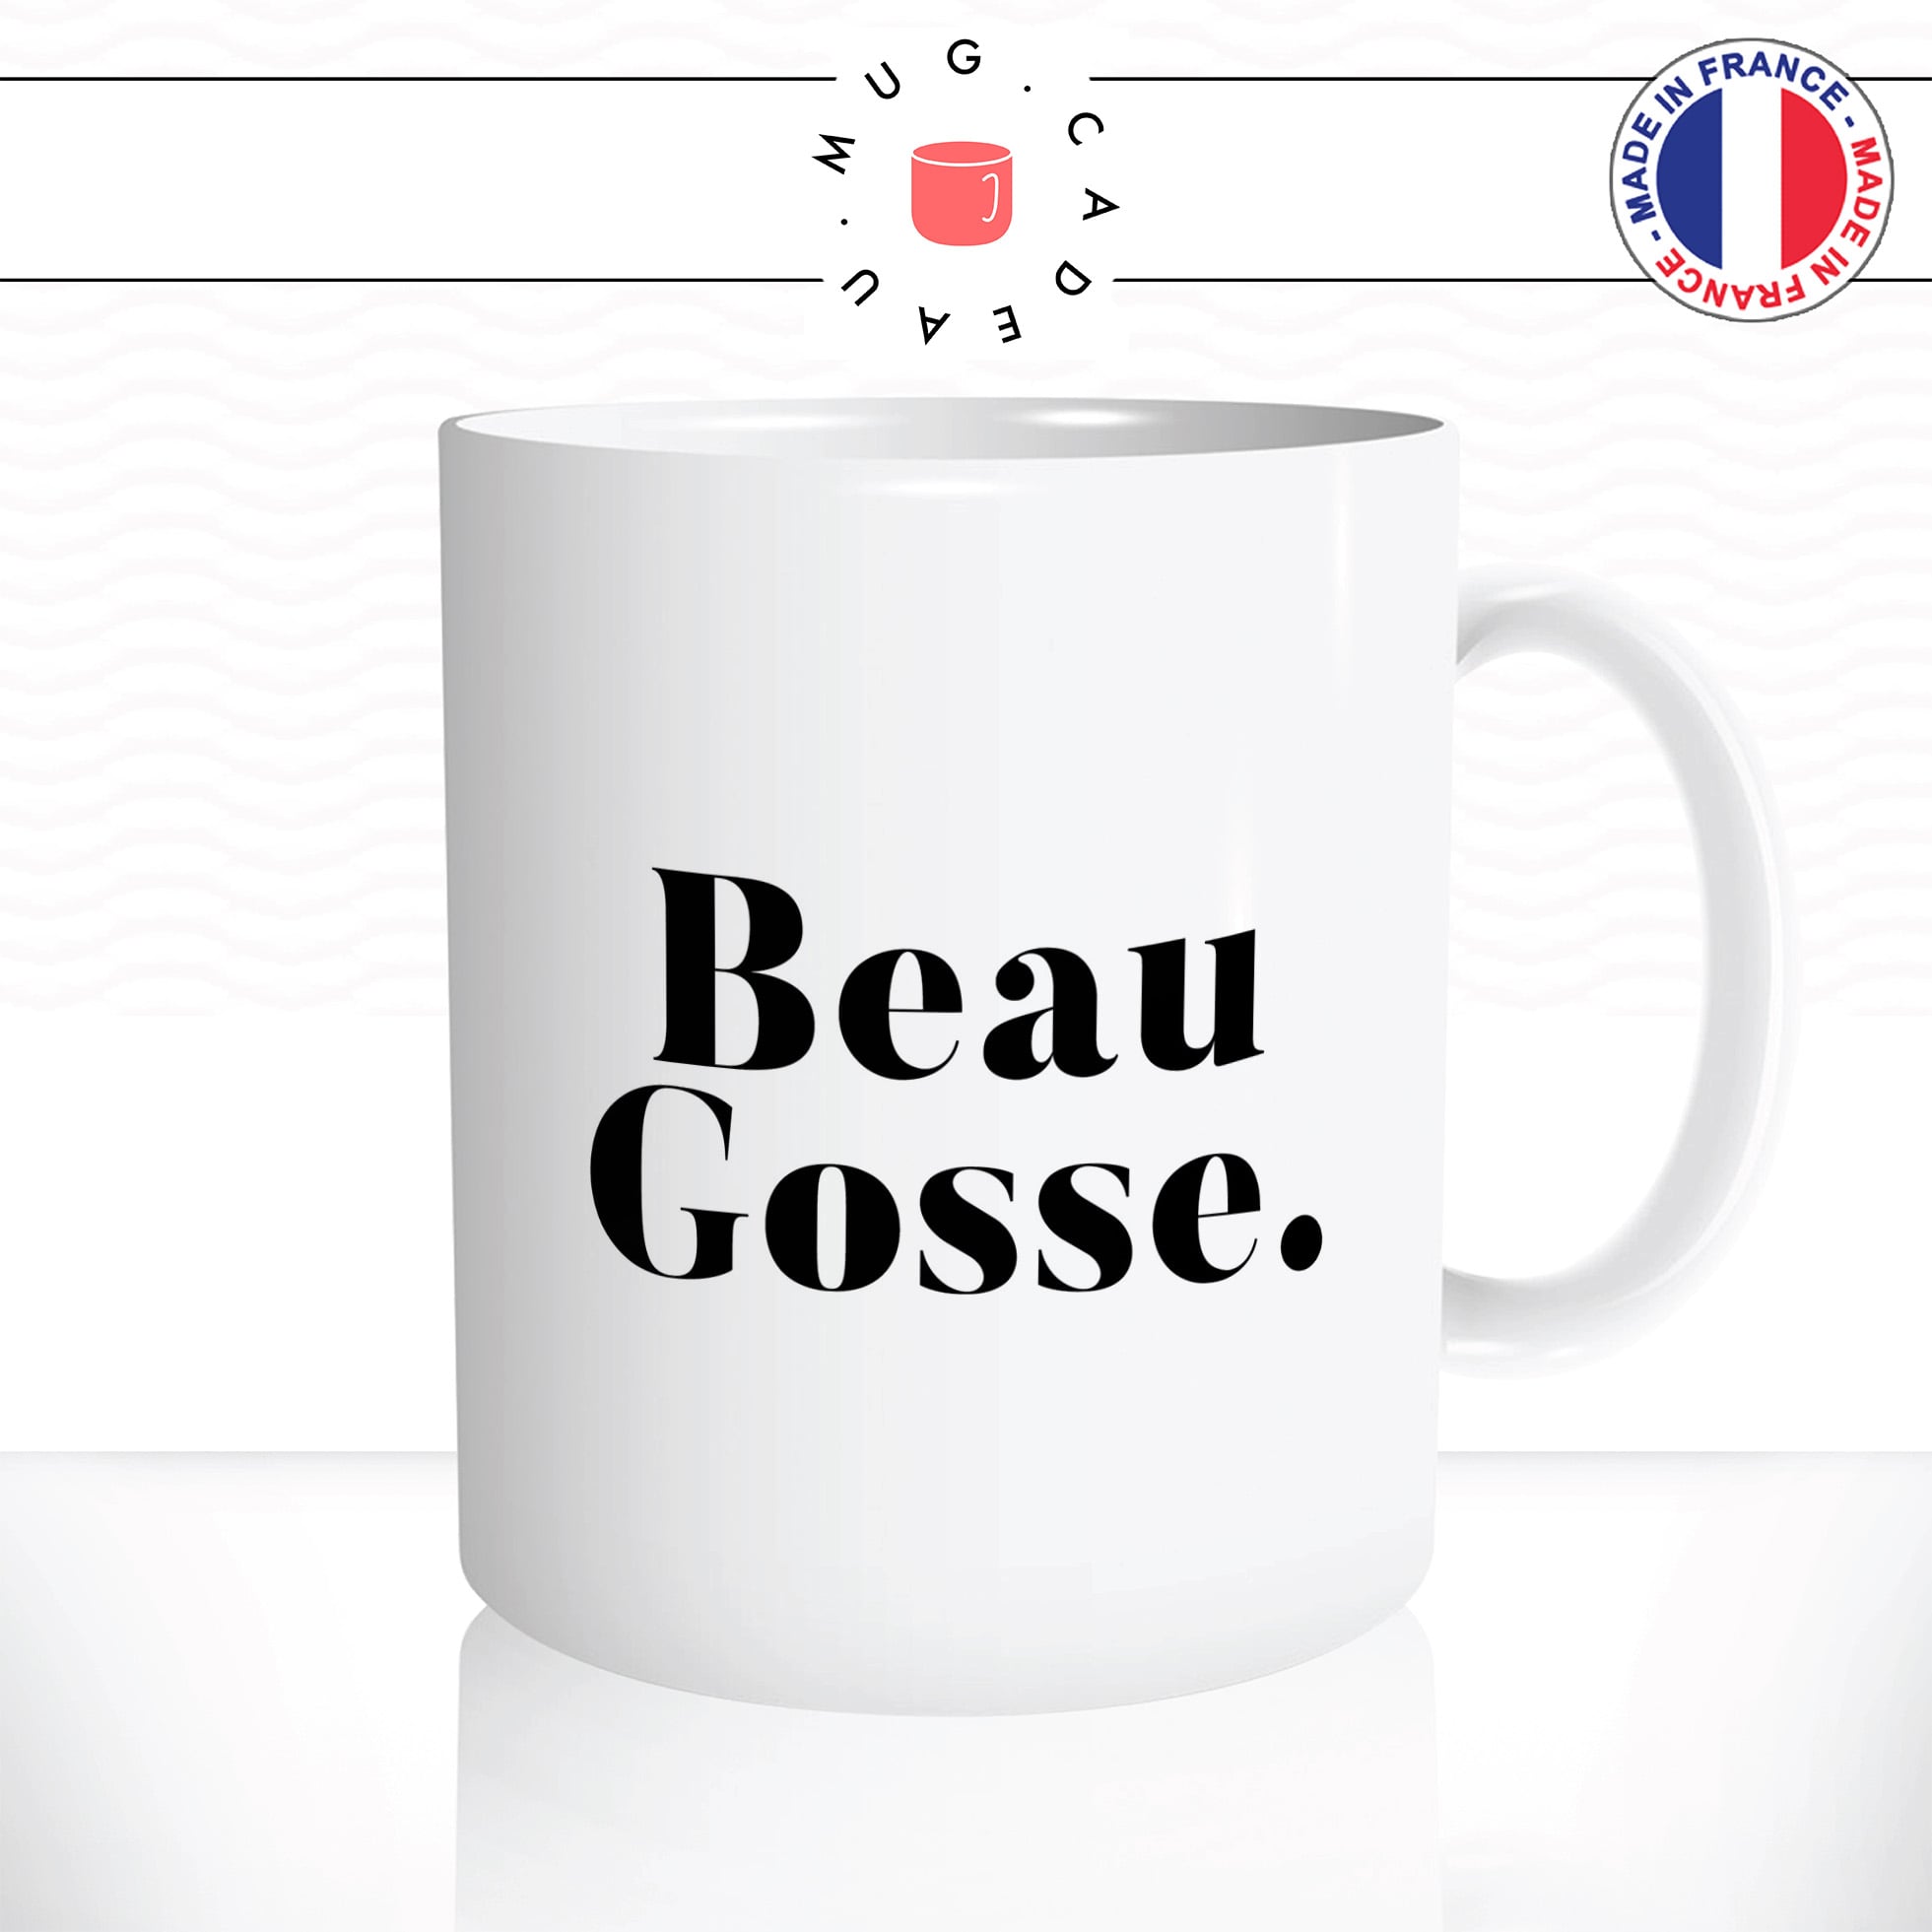 mug-tasse-beau-gosse-saint-valentin-homme-amoureux-bg-mec-couple-café-thé-humour-fun-idée-cadeau-original-personnalisée2-min